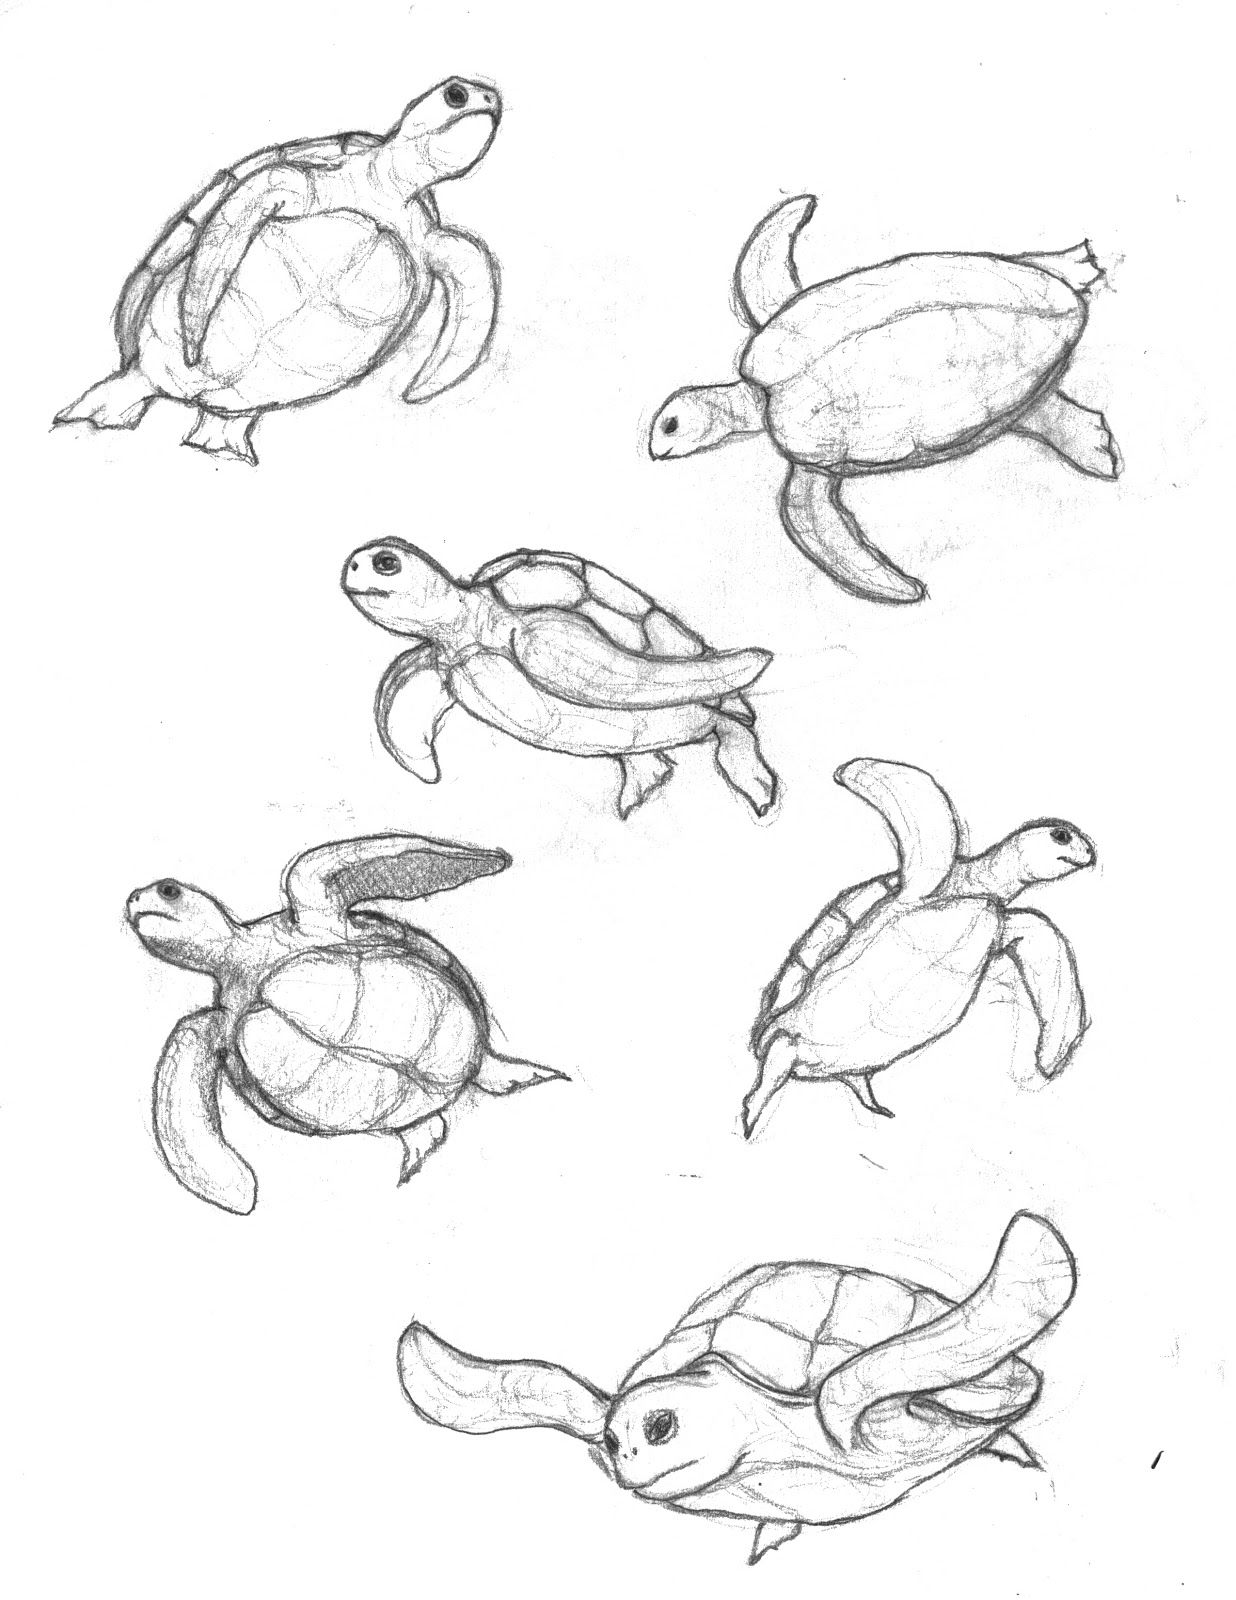  Schritt für Schritt, um eine niedliche schwimmende Schildkröte zu zeichnen